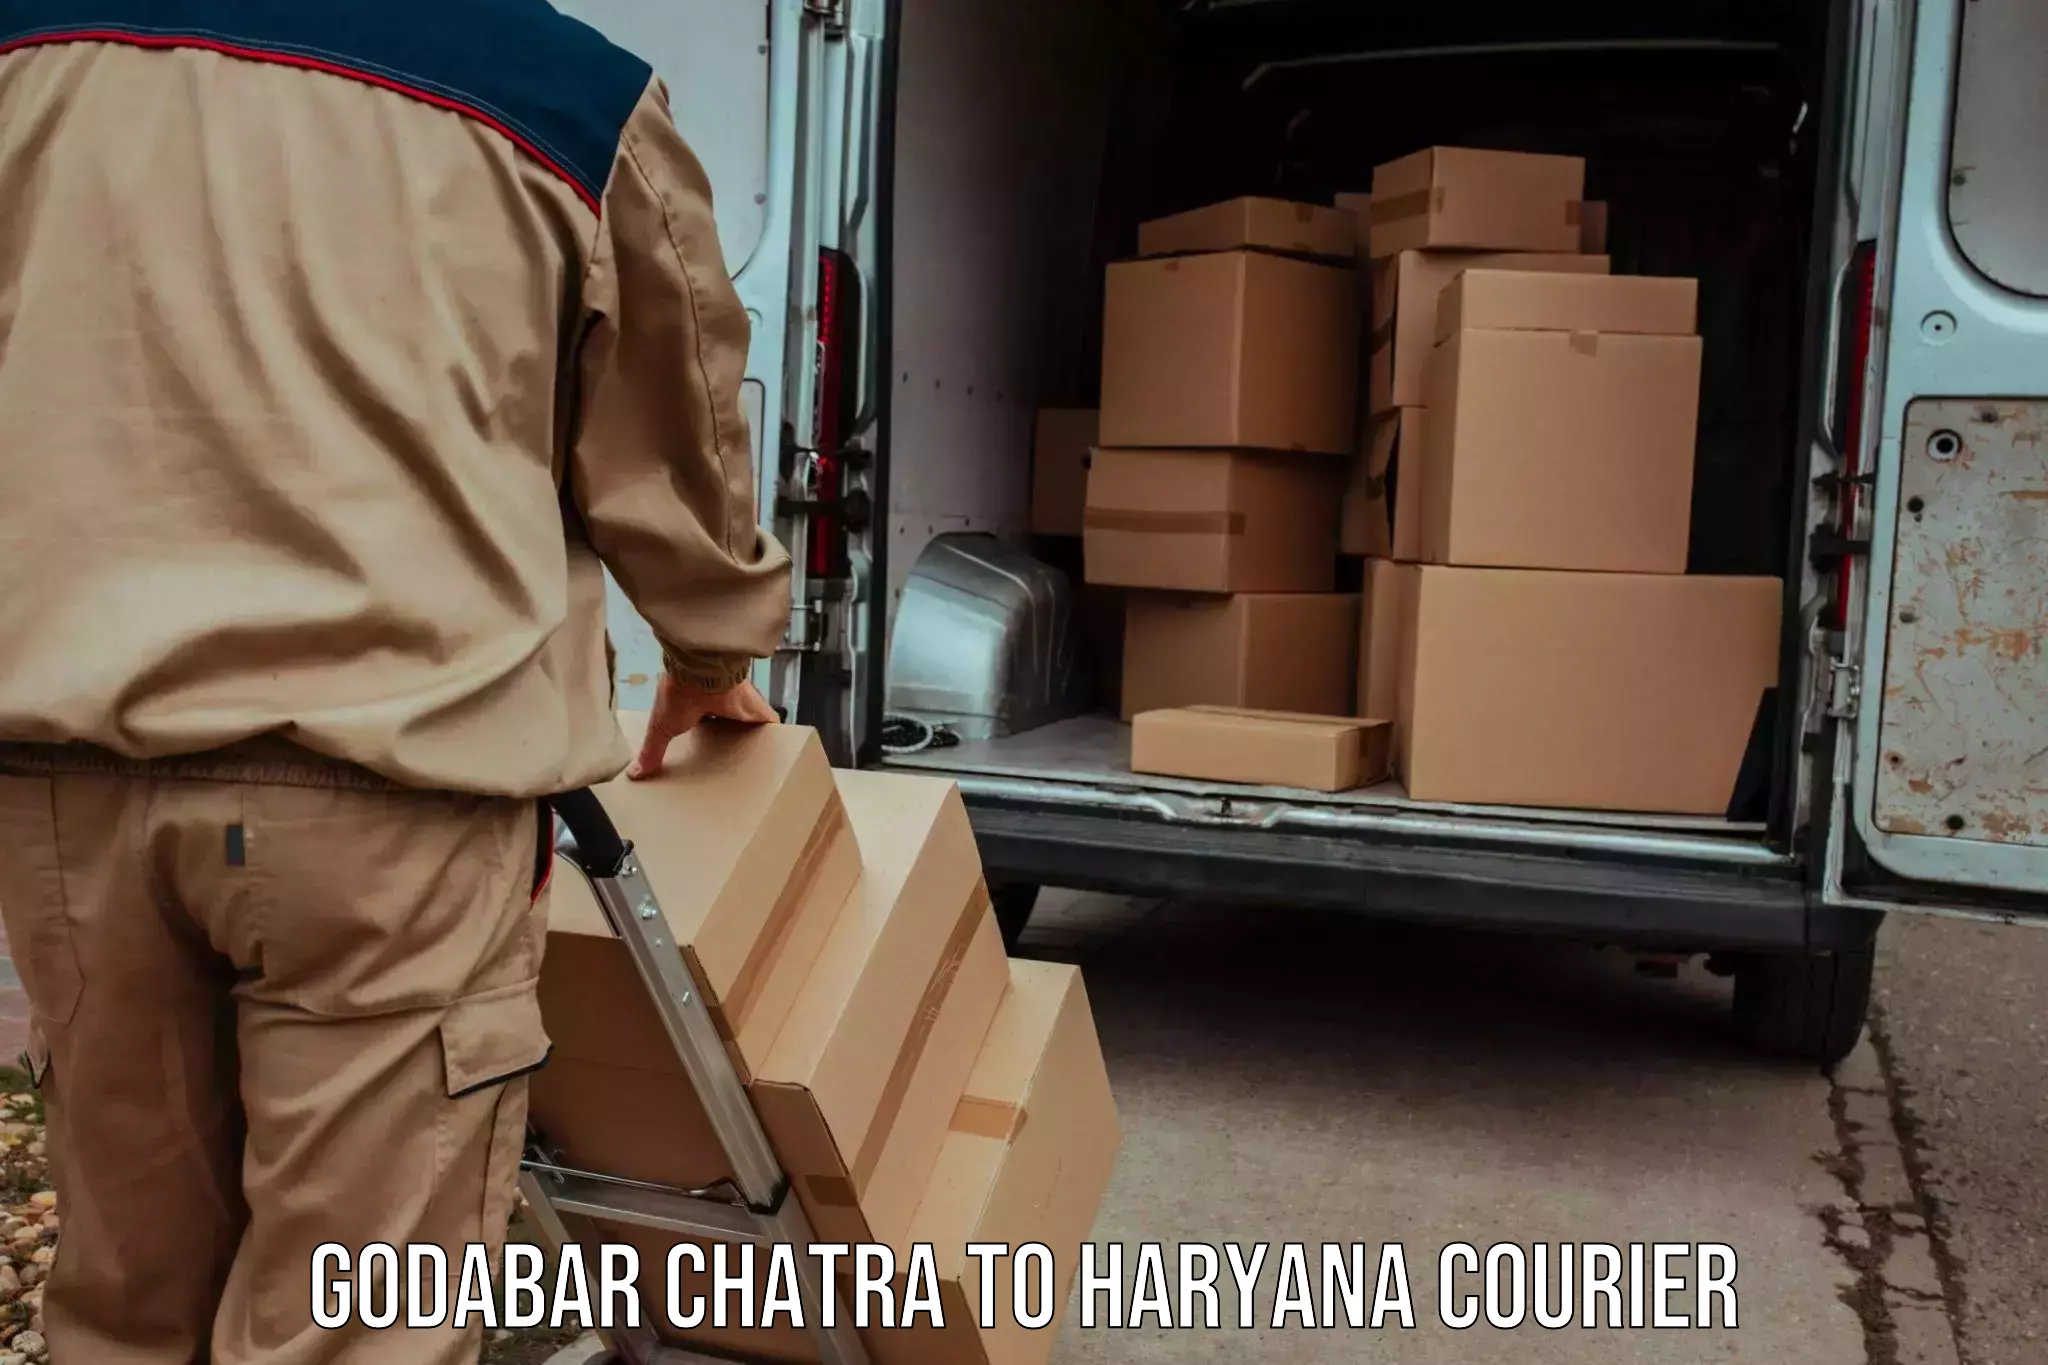 24/7 shipping services Godabar Chatra to Yamuna Nagar